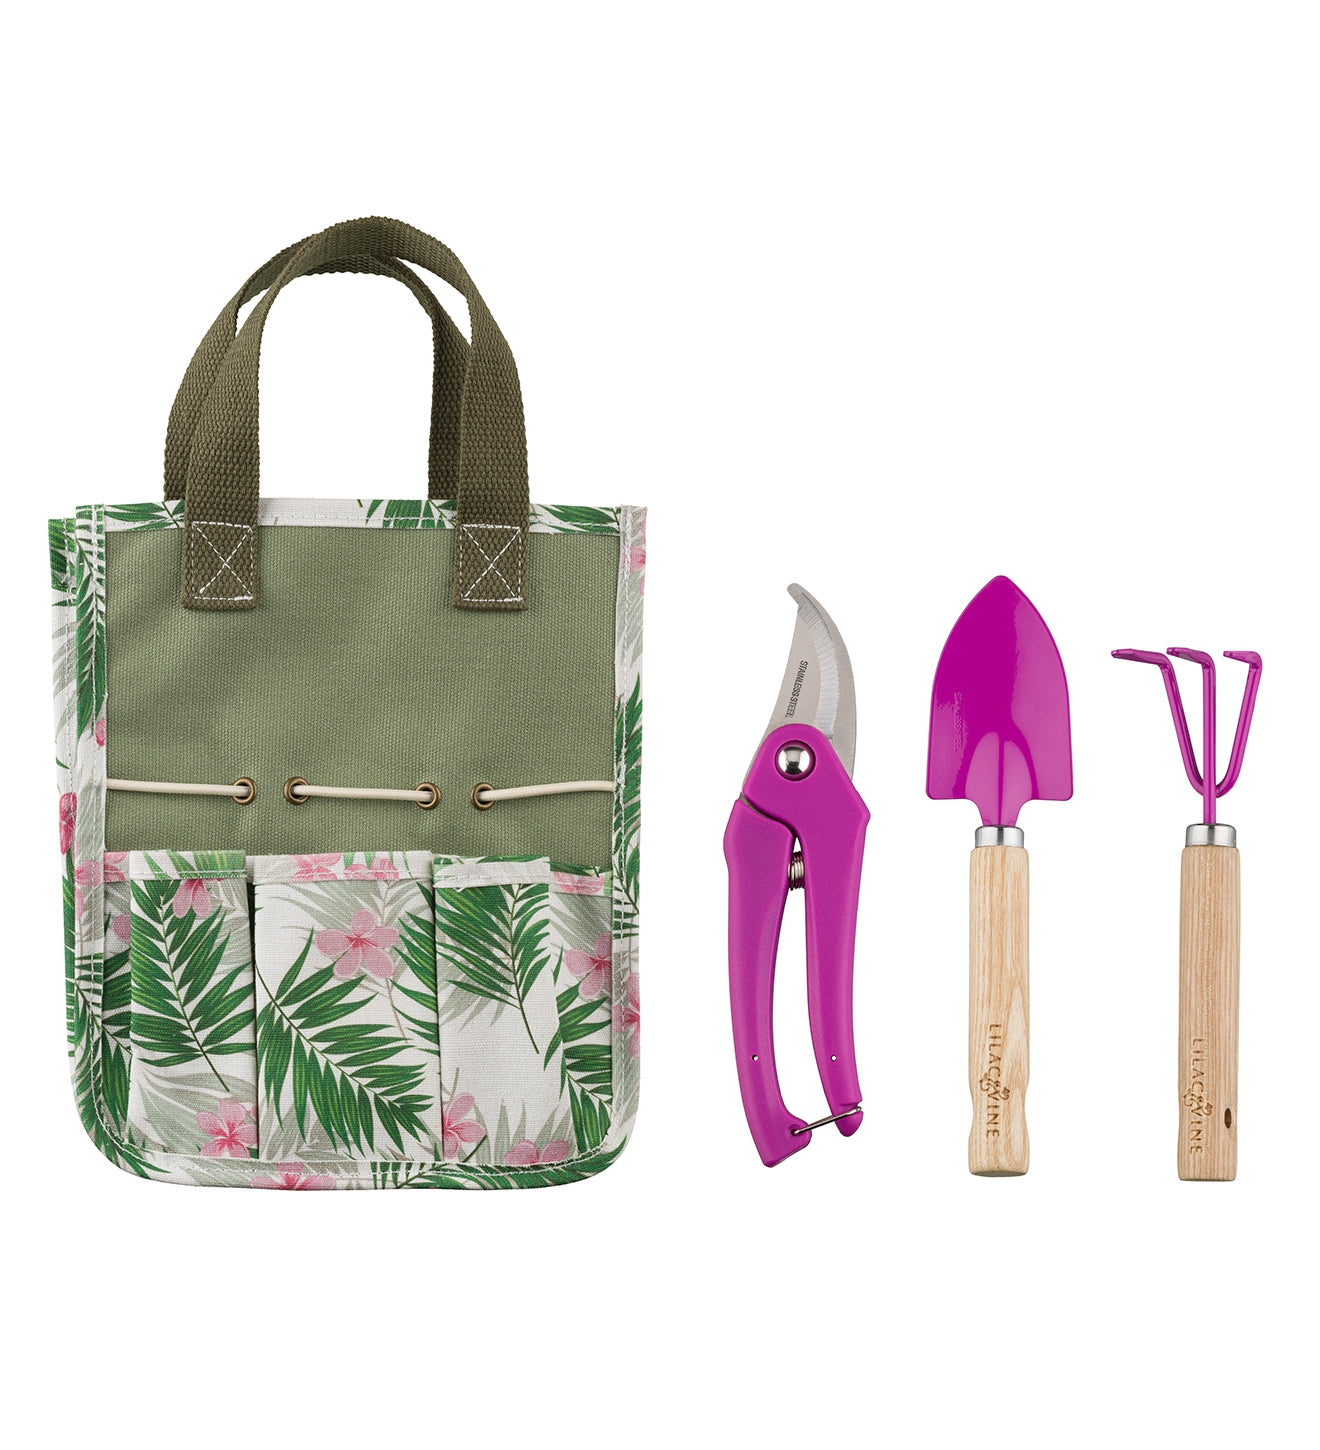 Lilac & Vine Capri Garden Mini Garden Kit Set/4 Outdoor Garden Tools Bag Pruner Cultivator Trowel